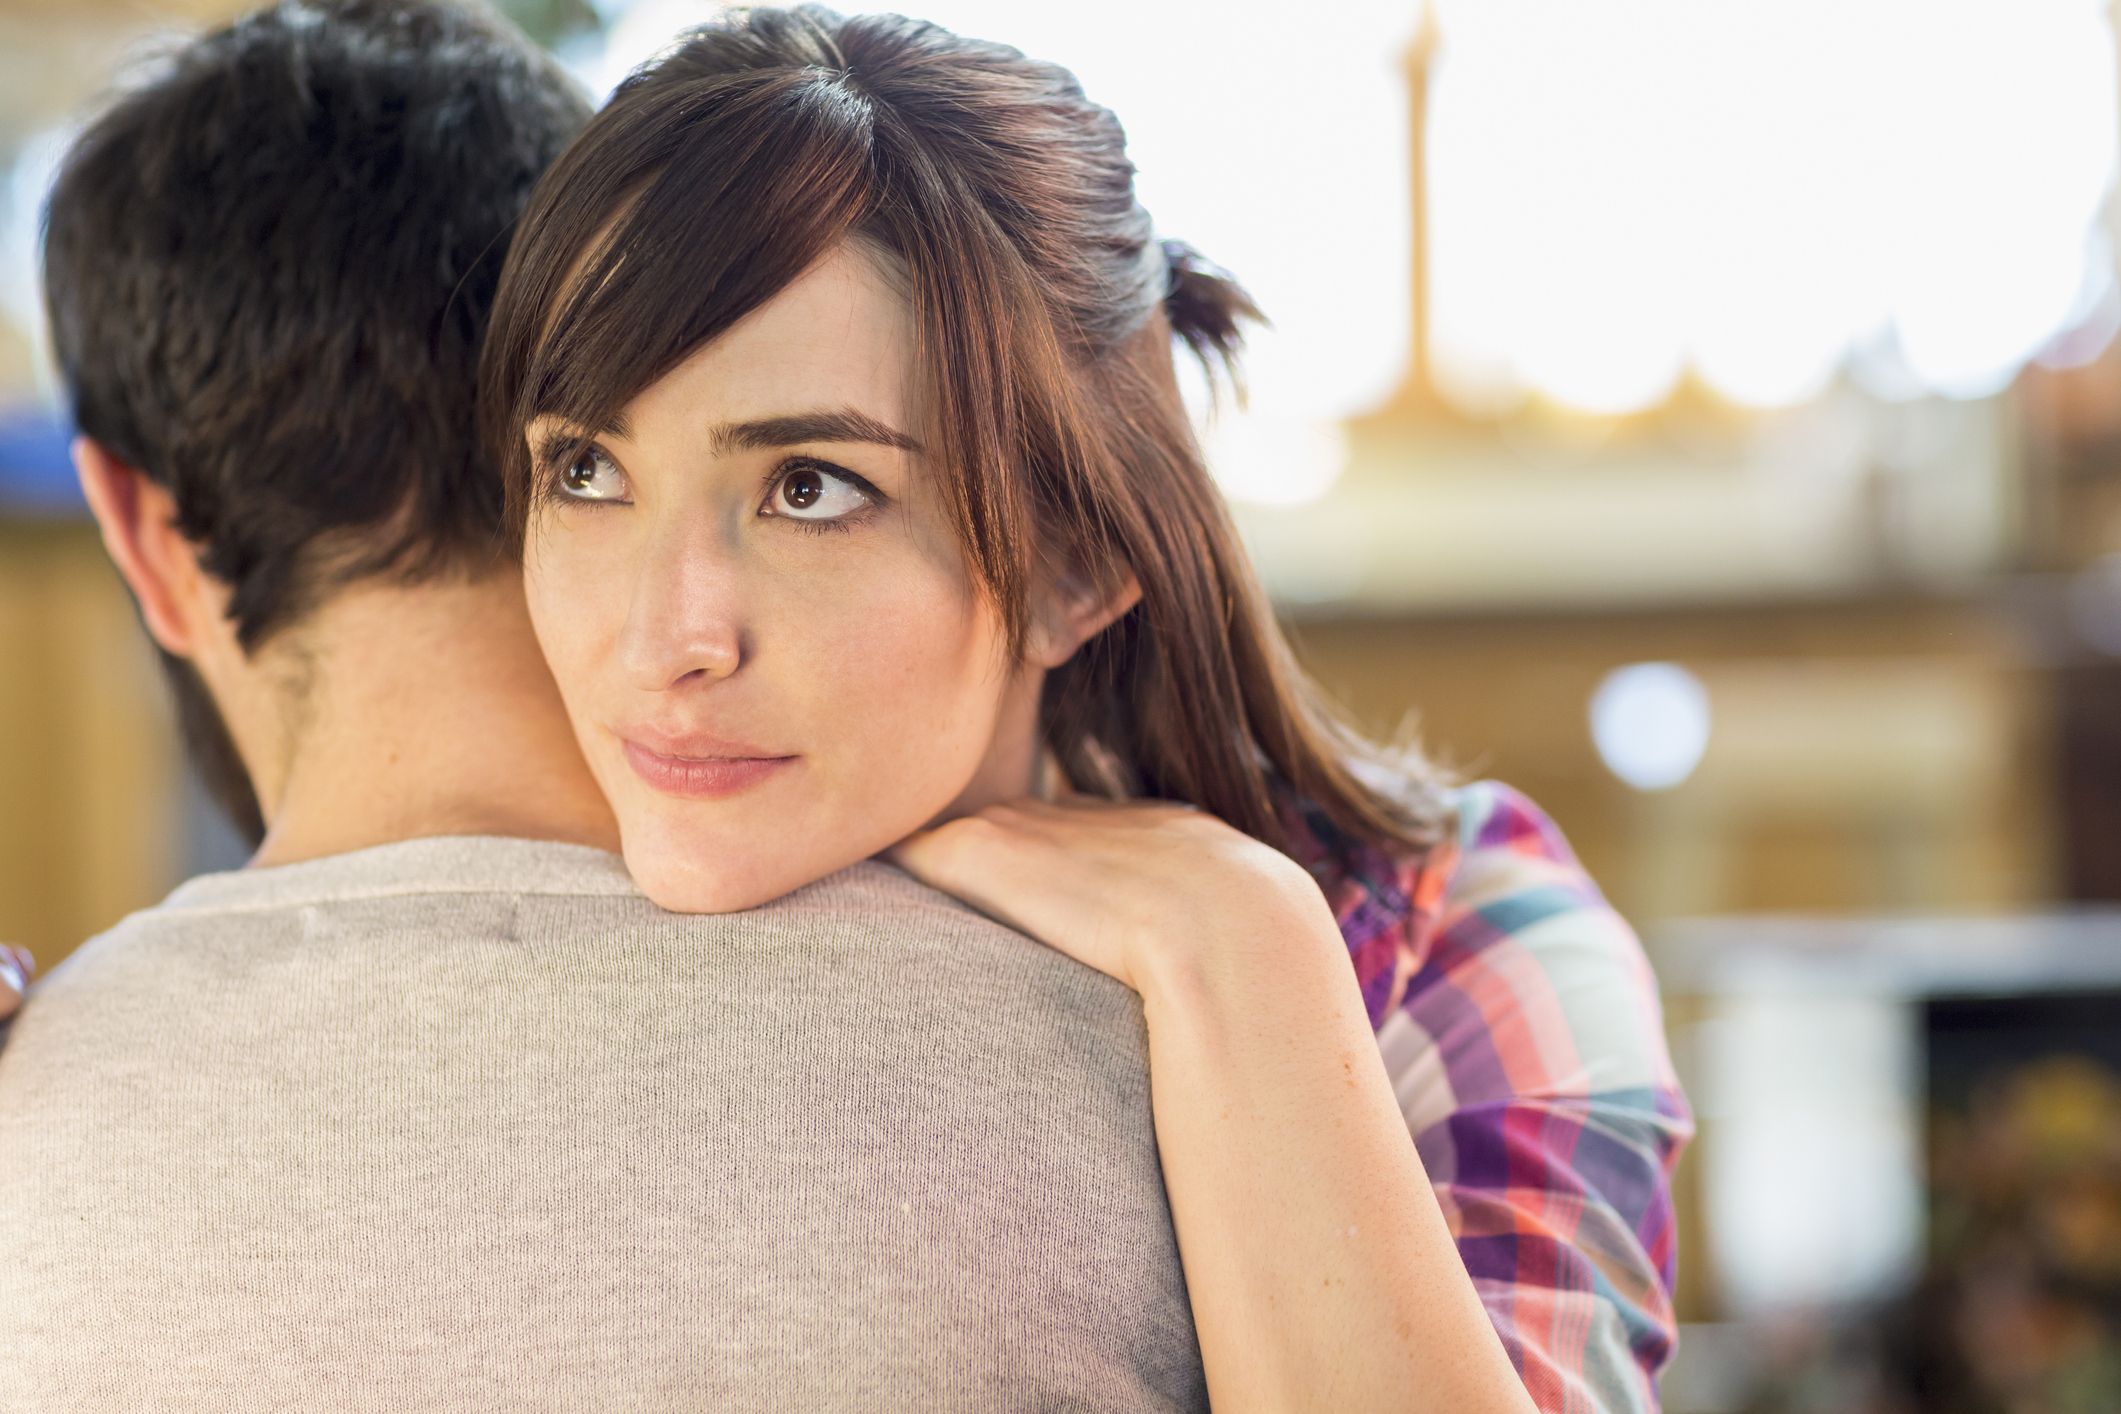 8 señales que mostrarían que tu pareja está engañándote